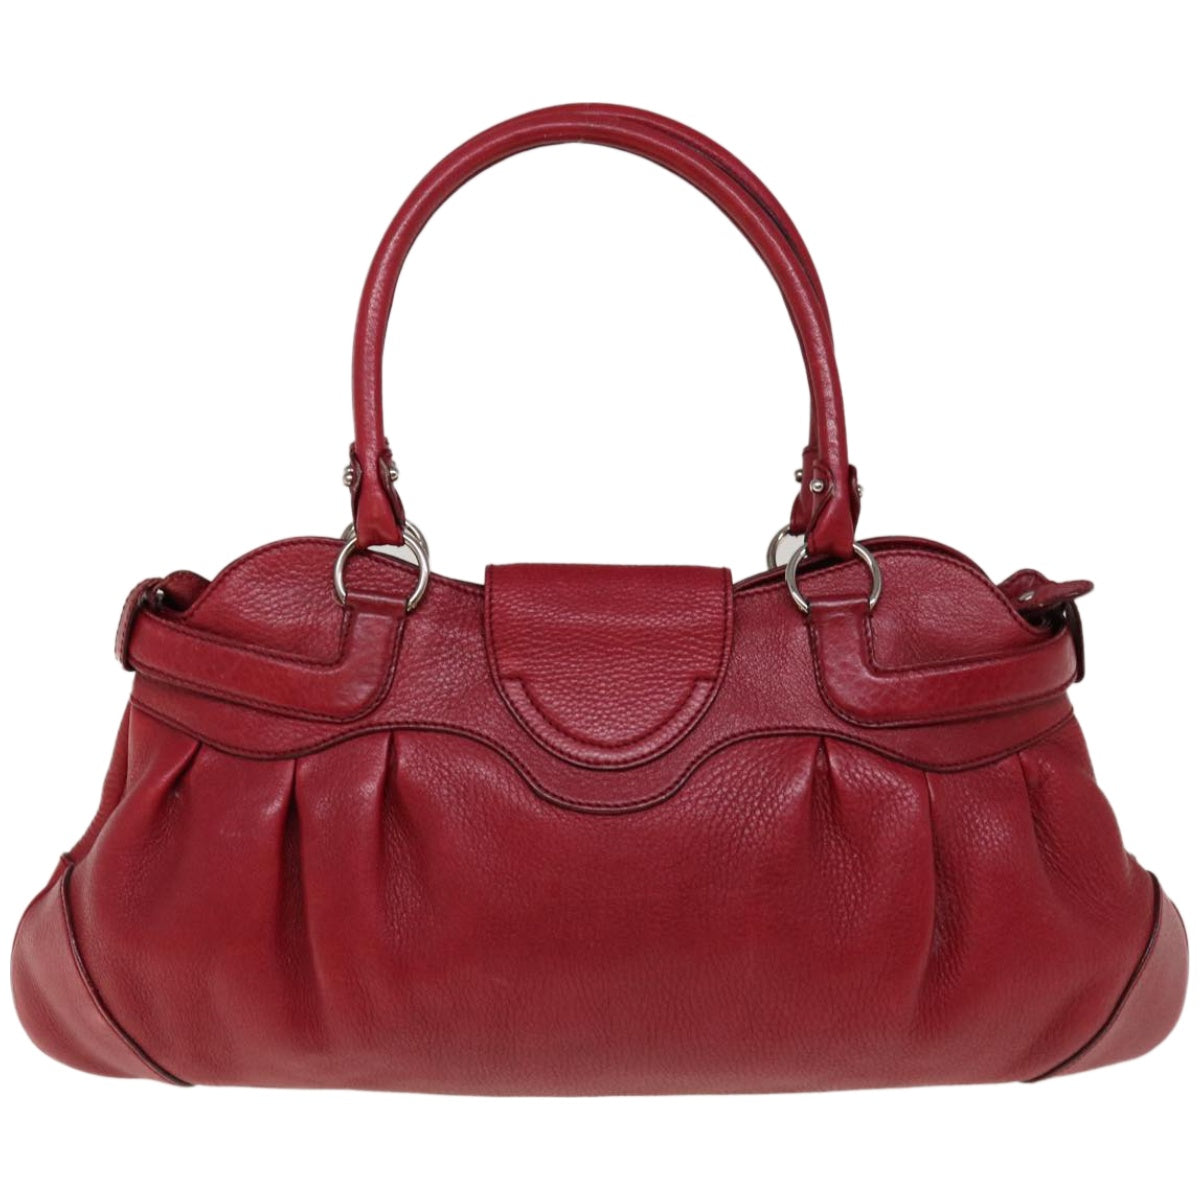 Salvatore Ferragamo Gancini Hand Bag Leather Red Auth 66232 - 0